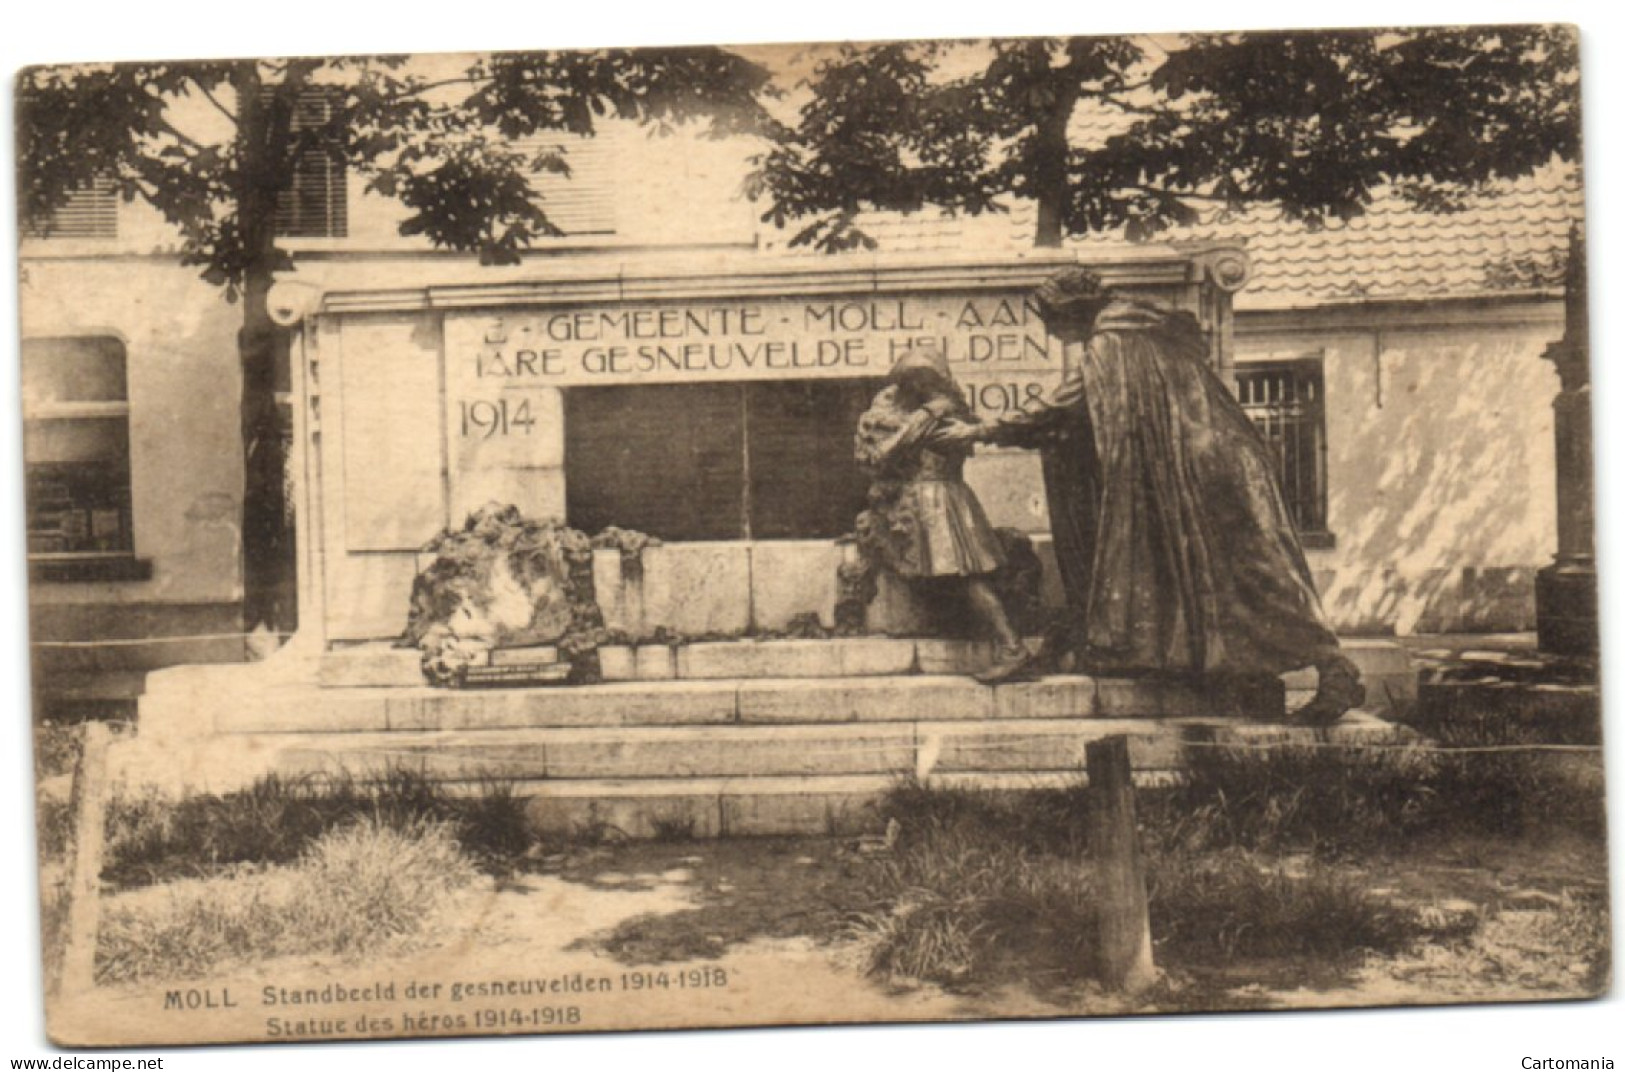 Moll - Standbeeld Der Gesneuvelden 1914-1918 - Mol